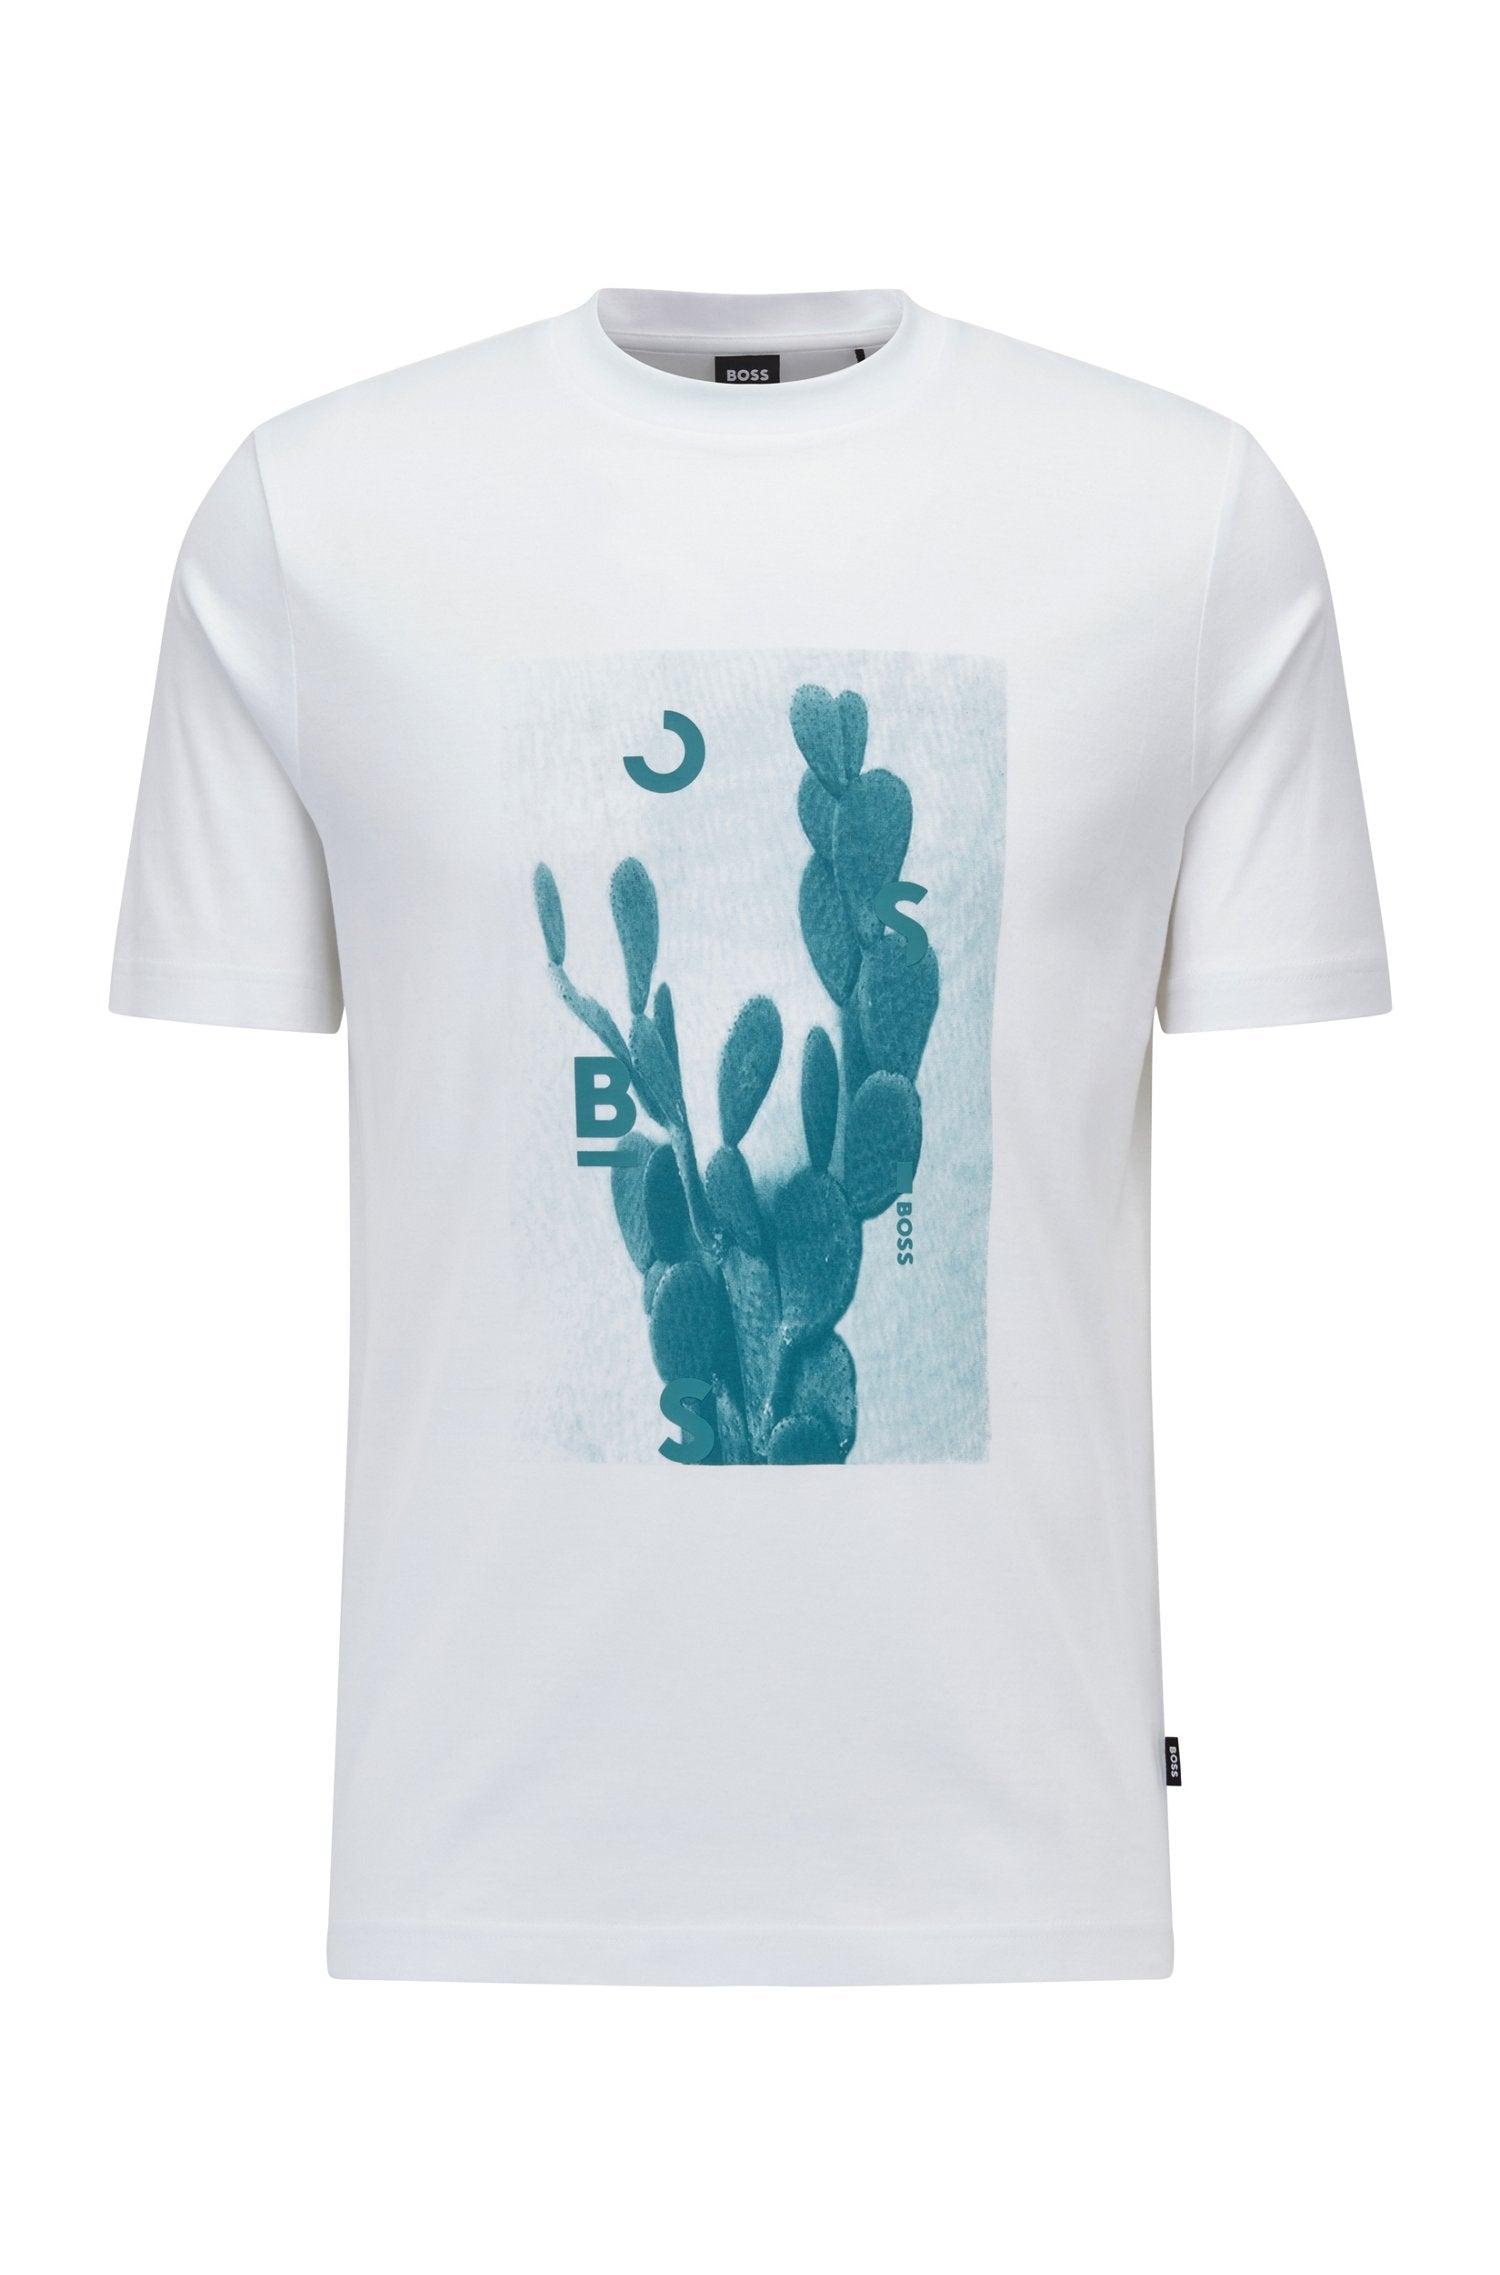 BOSS by HUGO BOSS Boss - Tessler 169 White Cactus Logo Print Slim Fit T- shirt 50469501 100 in Green for Men | Lyst